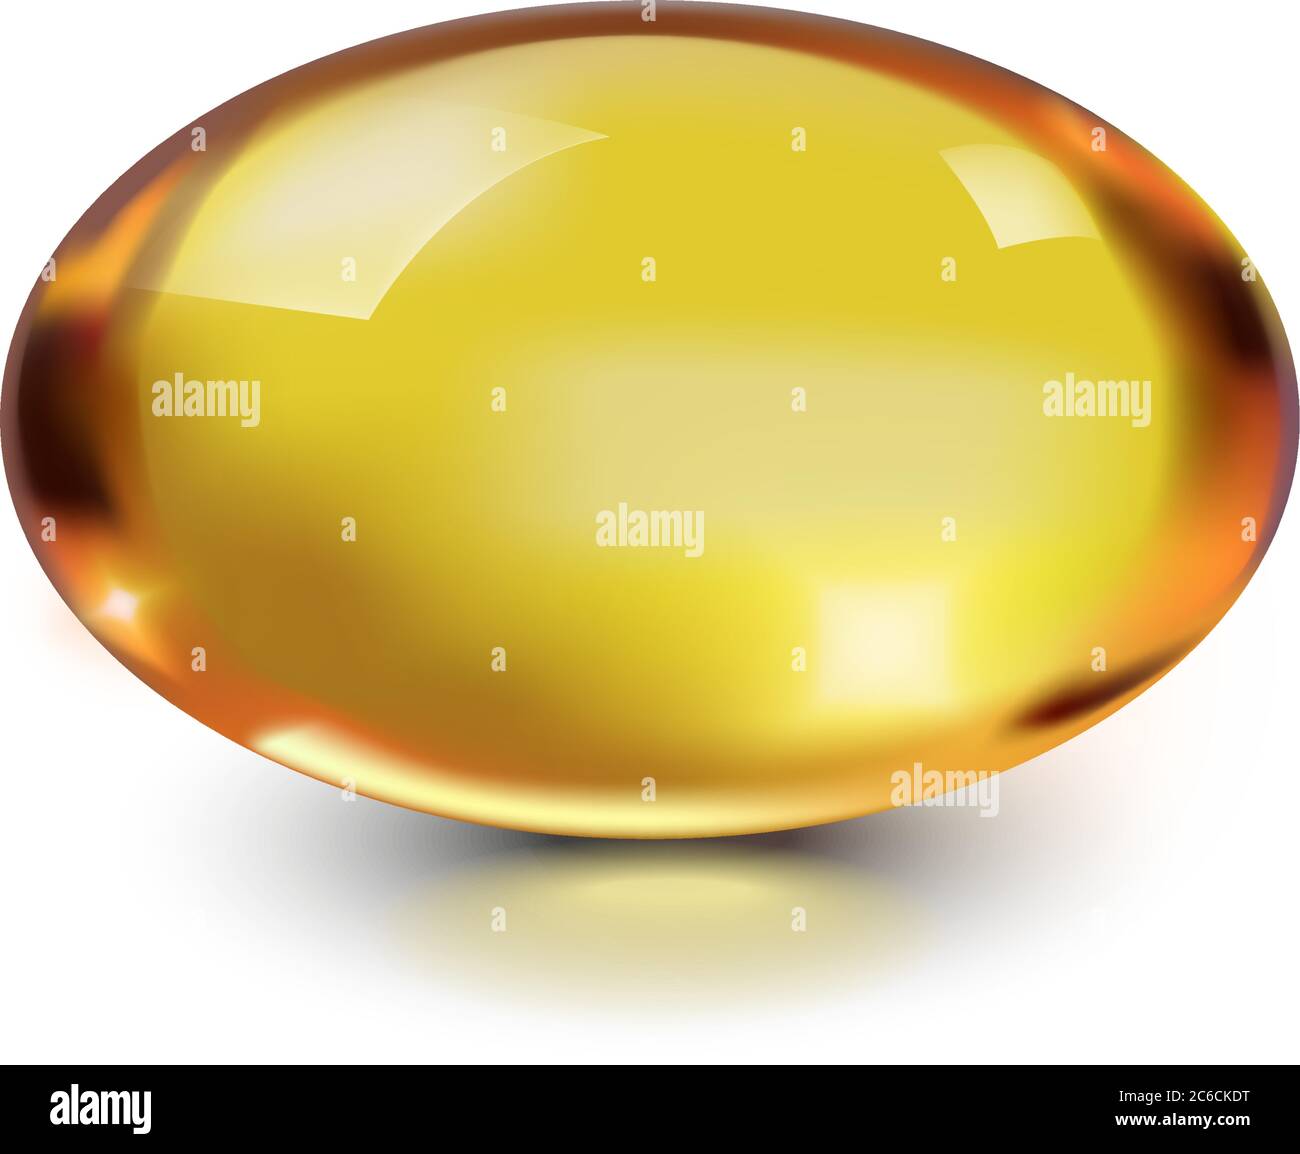 Capsule d'huile bulle ovale dorée isolée sur fond blanc. Vitamine E, A, oméga 3 à usage cosmétique. Modèle d'icône de pilule de gel antibiotique pour le foie, le poisson. Illustration de Vecteur